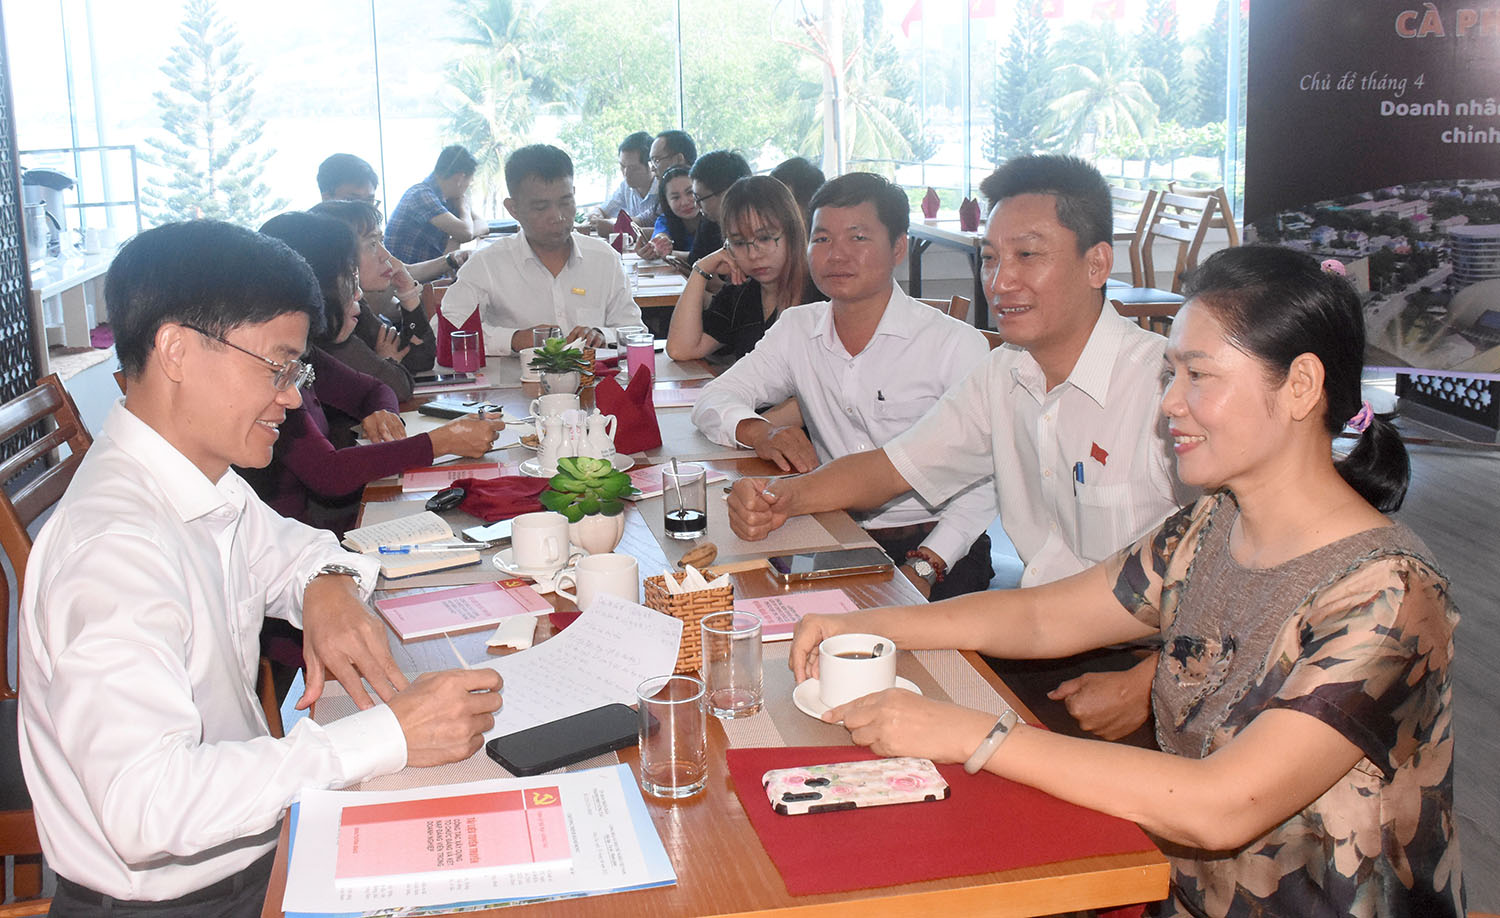 Lãnh đạo TP.Vũng Tàu trao đổi với các doanh nhân trong chương trình “Cà phê doanh nhân”.